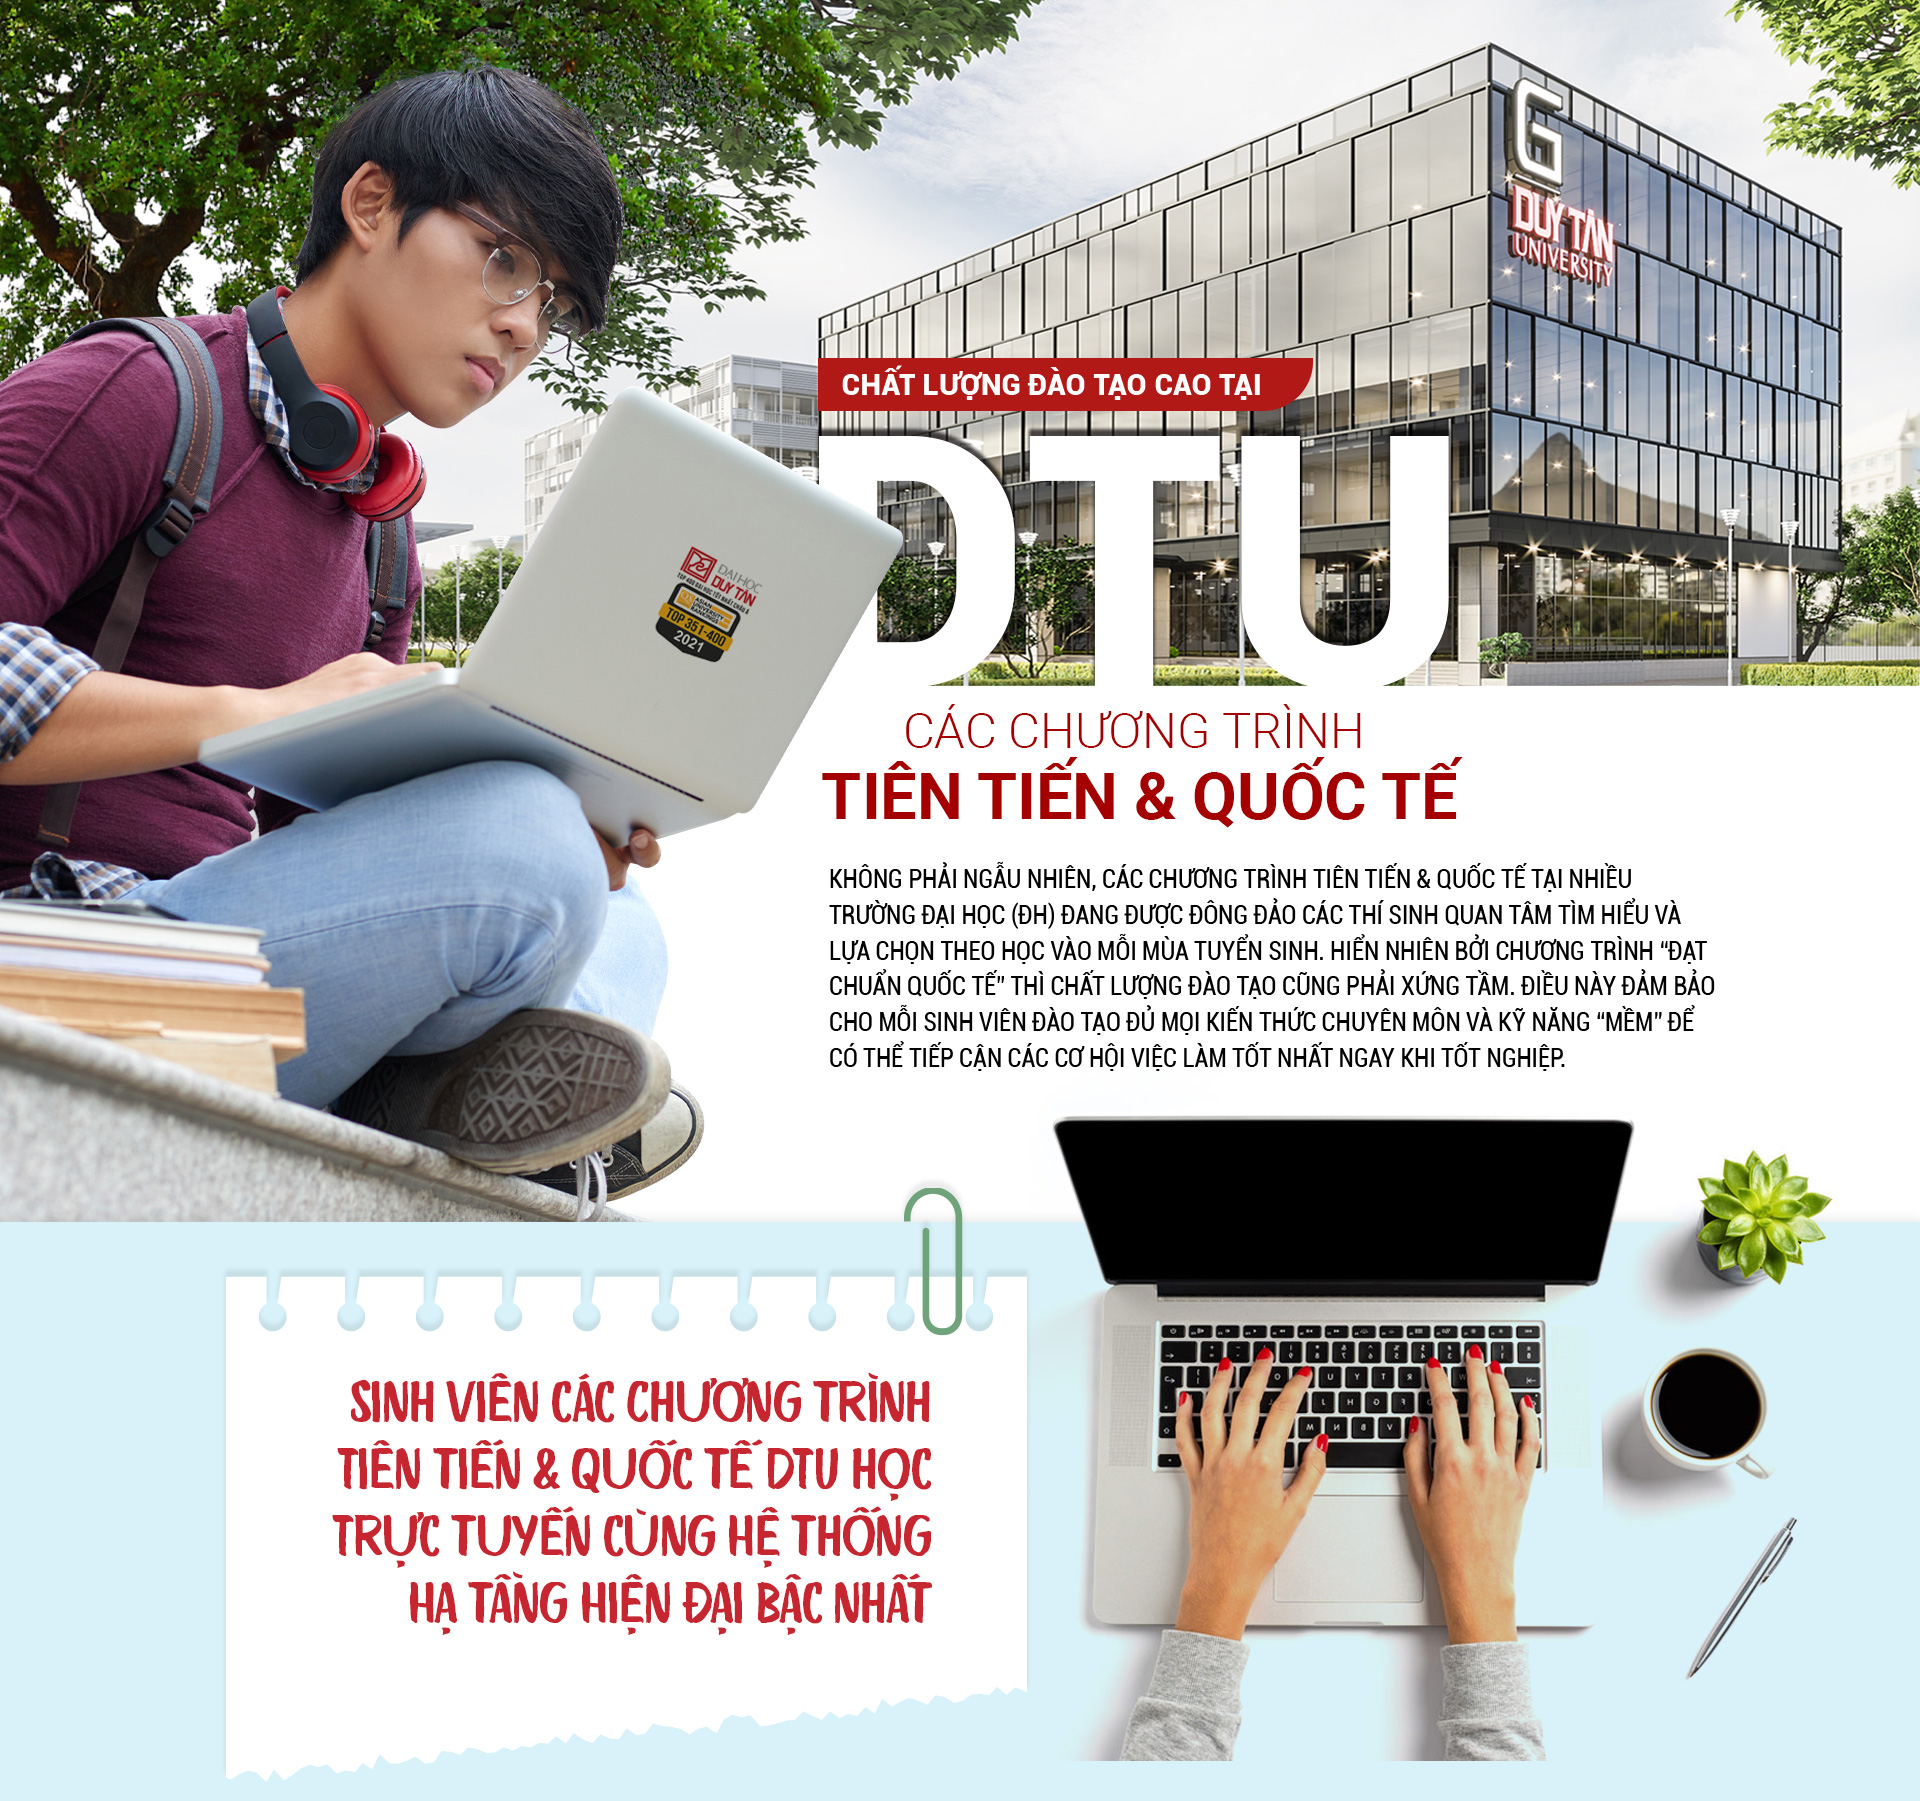 Chất lượng đào tạo cao tại DTU: Các chương trình tiên tiến và quốc tế Cover-des